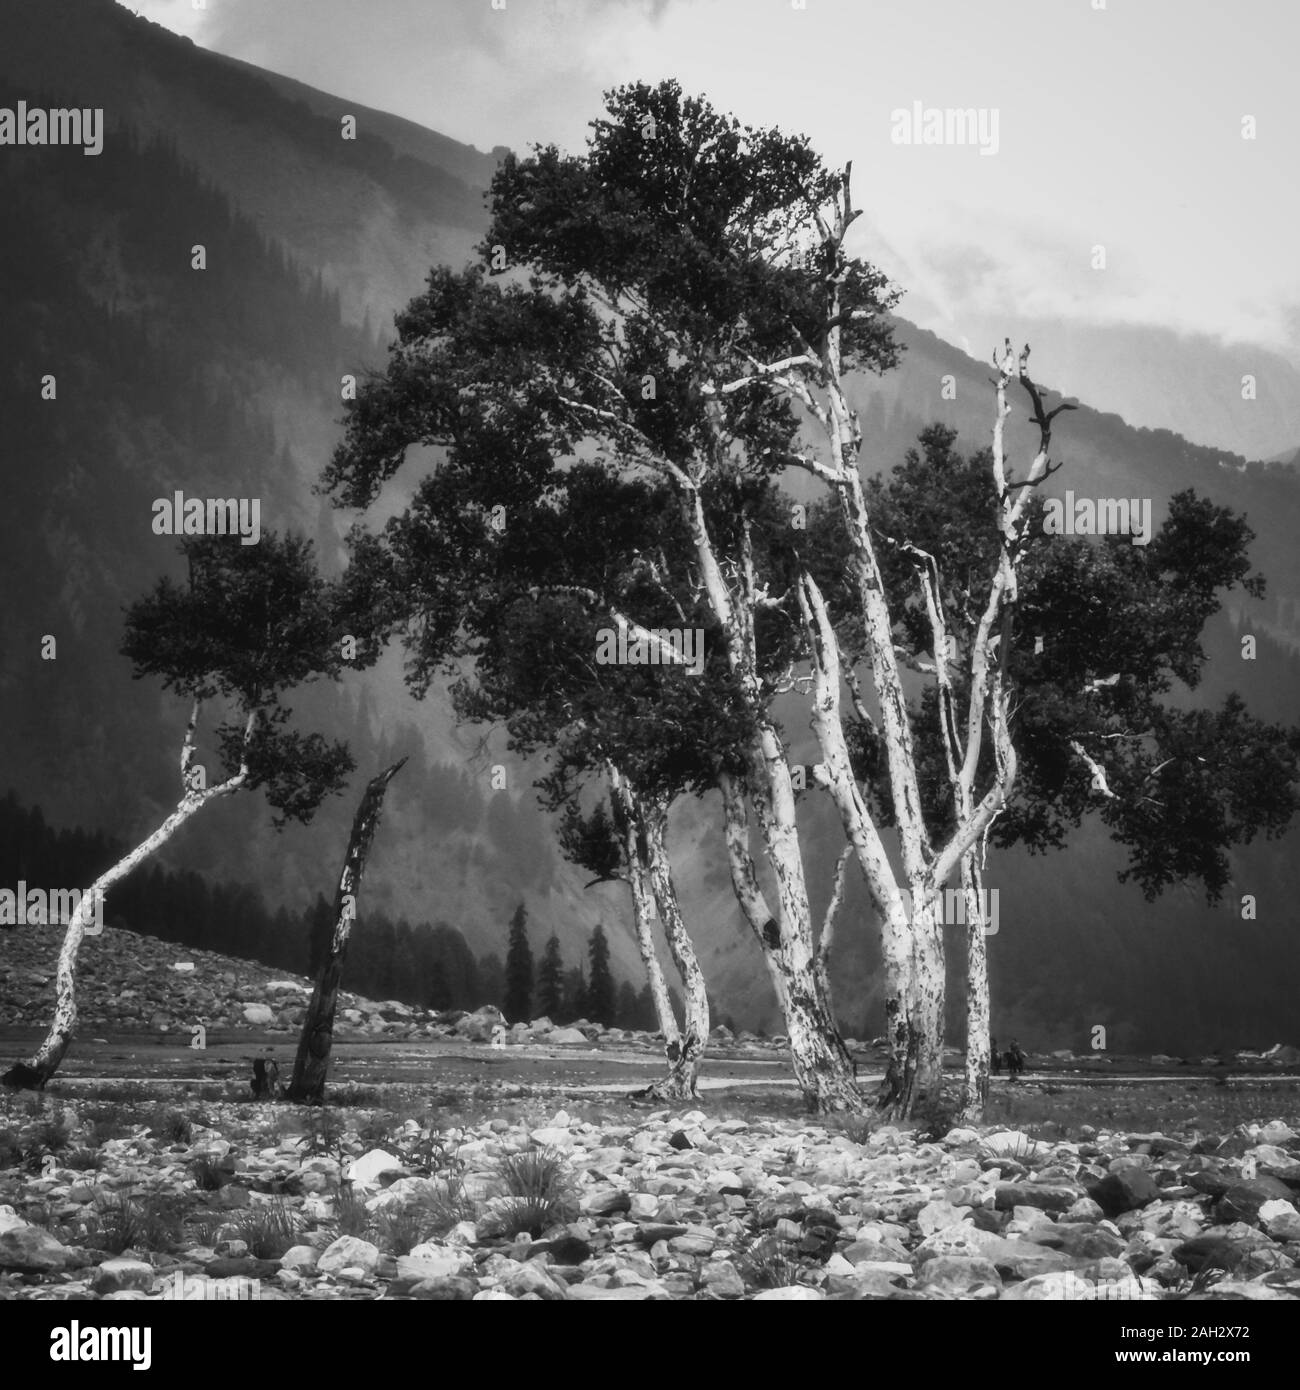 Un groupe d'arbres poussant sur un terrain rocheux près de Thajwas Glacier dans Sonmarg cachemire. Arbres en noir et blanc Banque D'Images